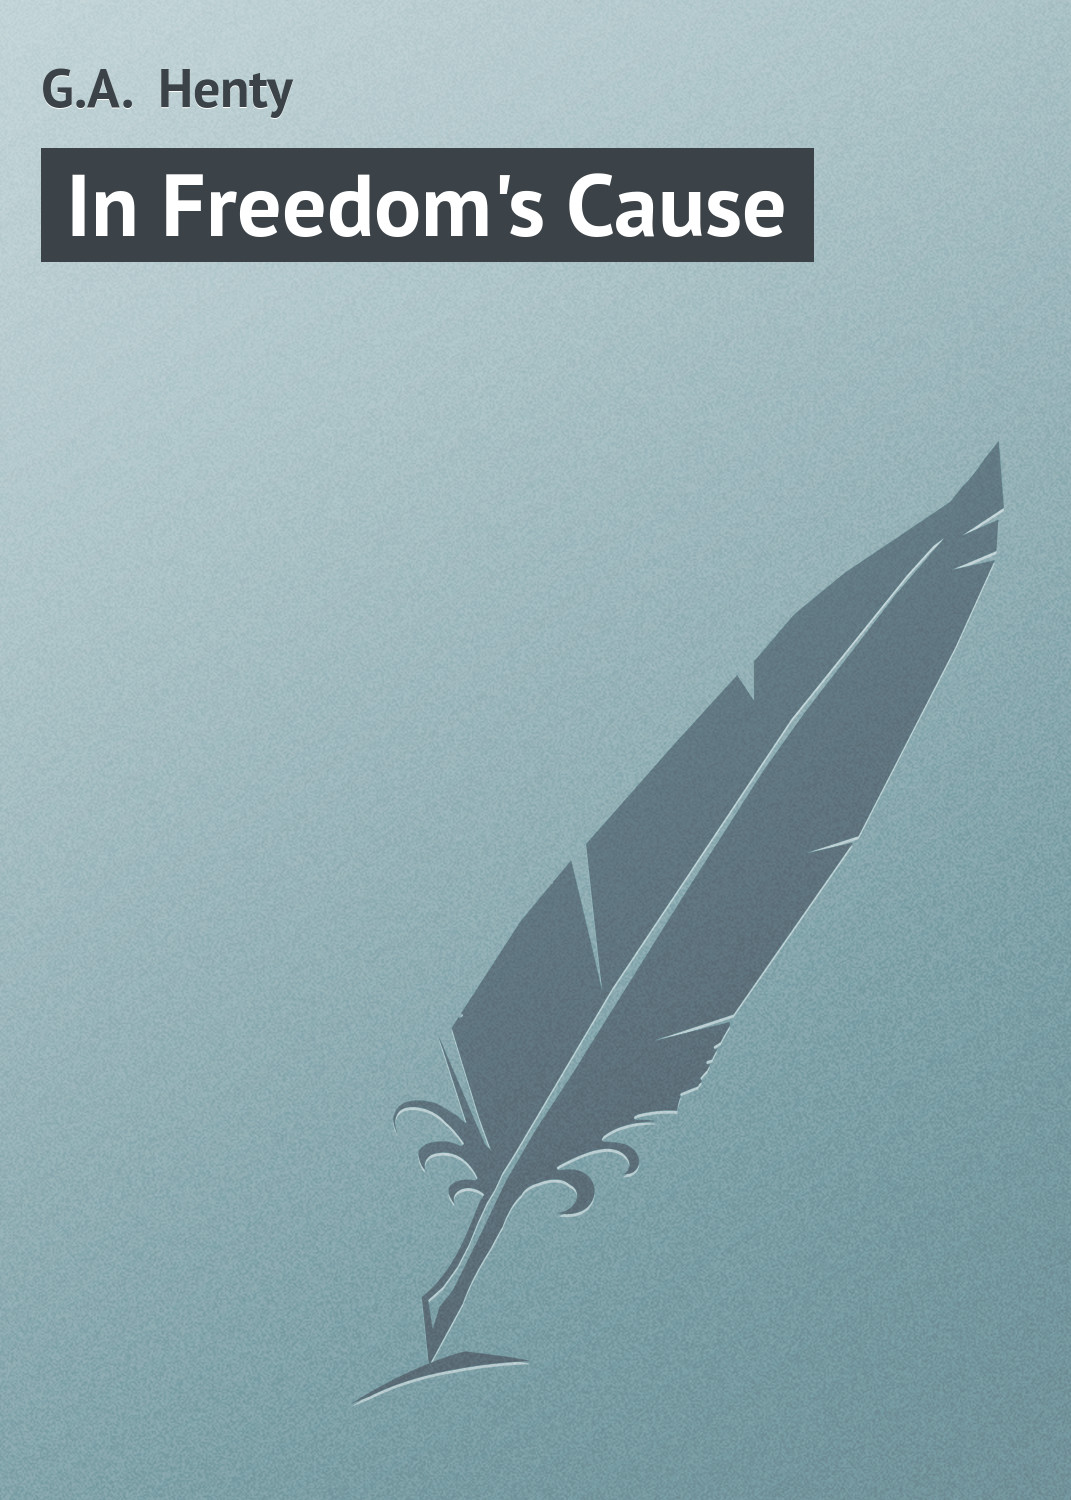 Книга In Freedom's Cause из серии , созданная G.A. Henty, может относится к жанру Зарубежная старинная литература, Зарубежная классика. Стоимость электронной книги In Freedom's Cause с идентификатором 21103230 составляет 5.99 руб.